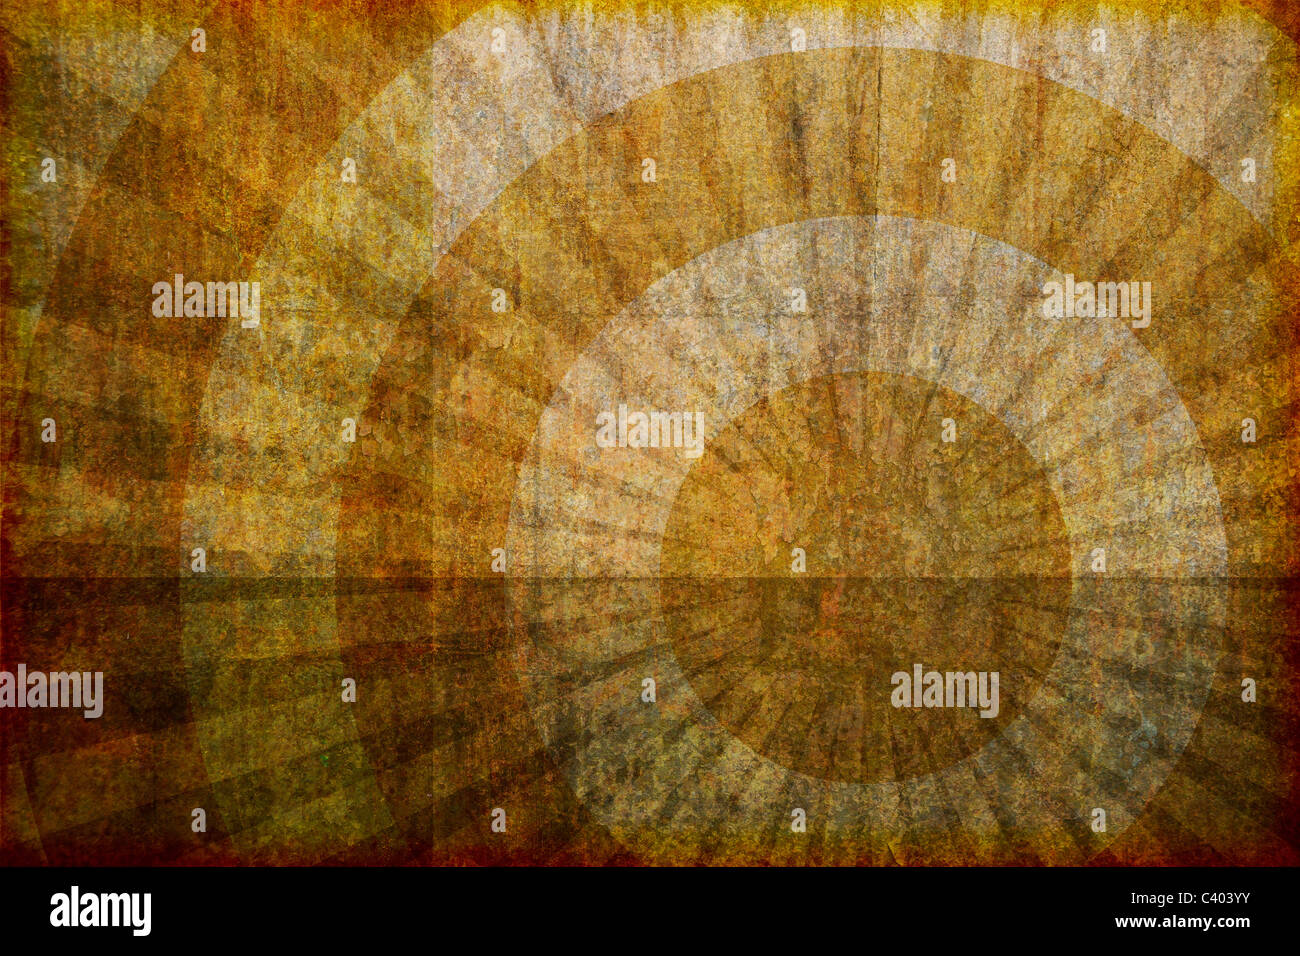 Eine schmutzig aussehende abstrakten, künstlerische Grunge Hintergrund Illustration mit konzentrischen Kreisen und Strahlen. Stockfoto